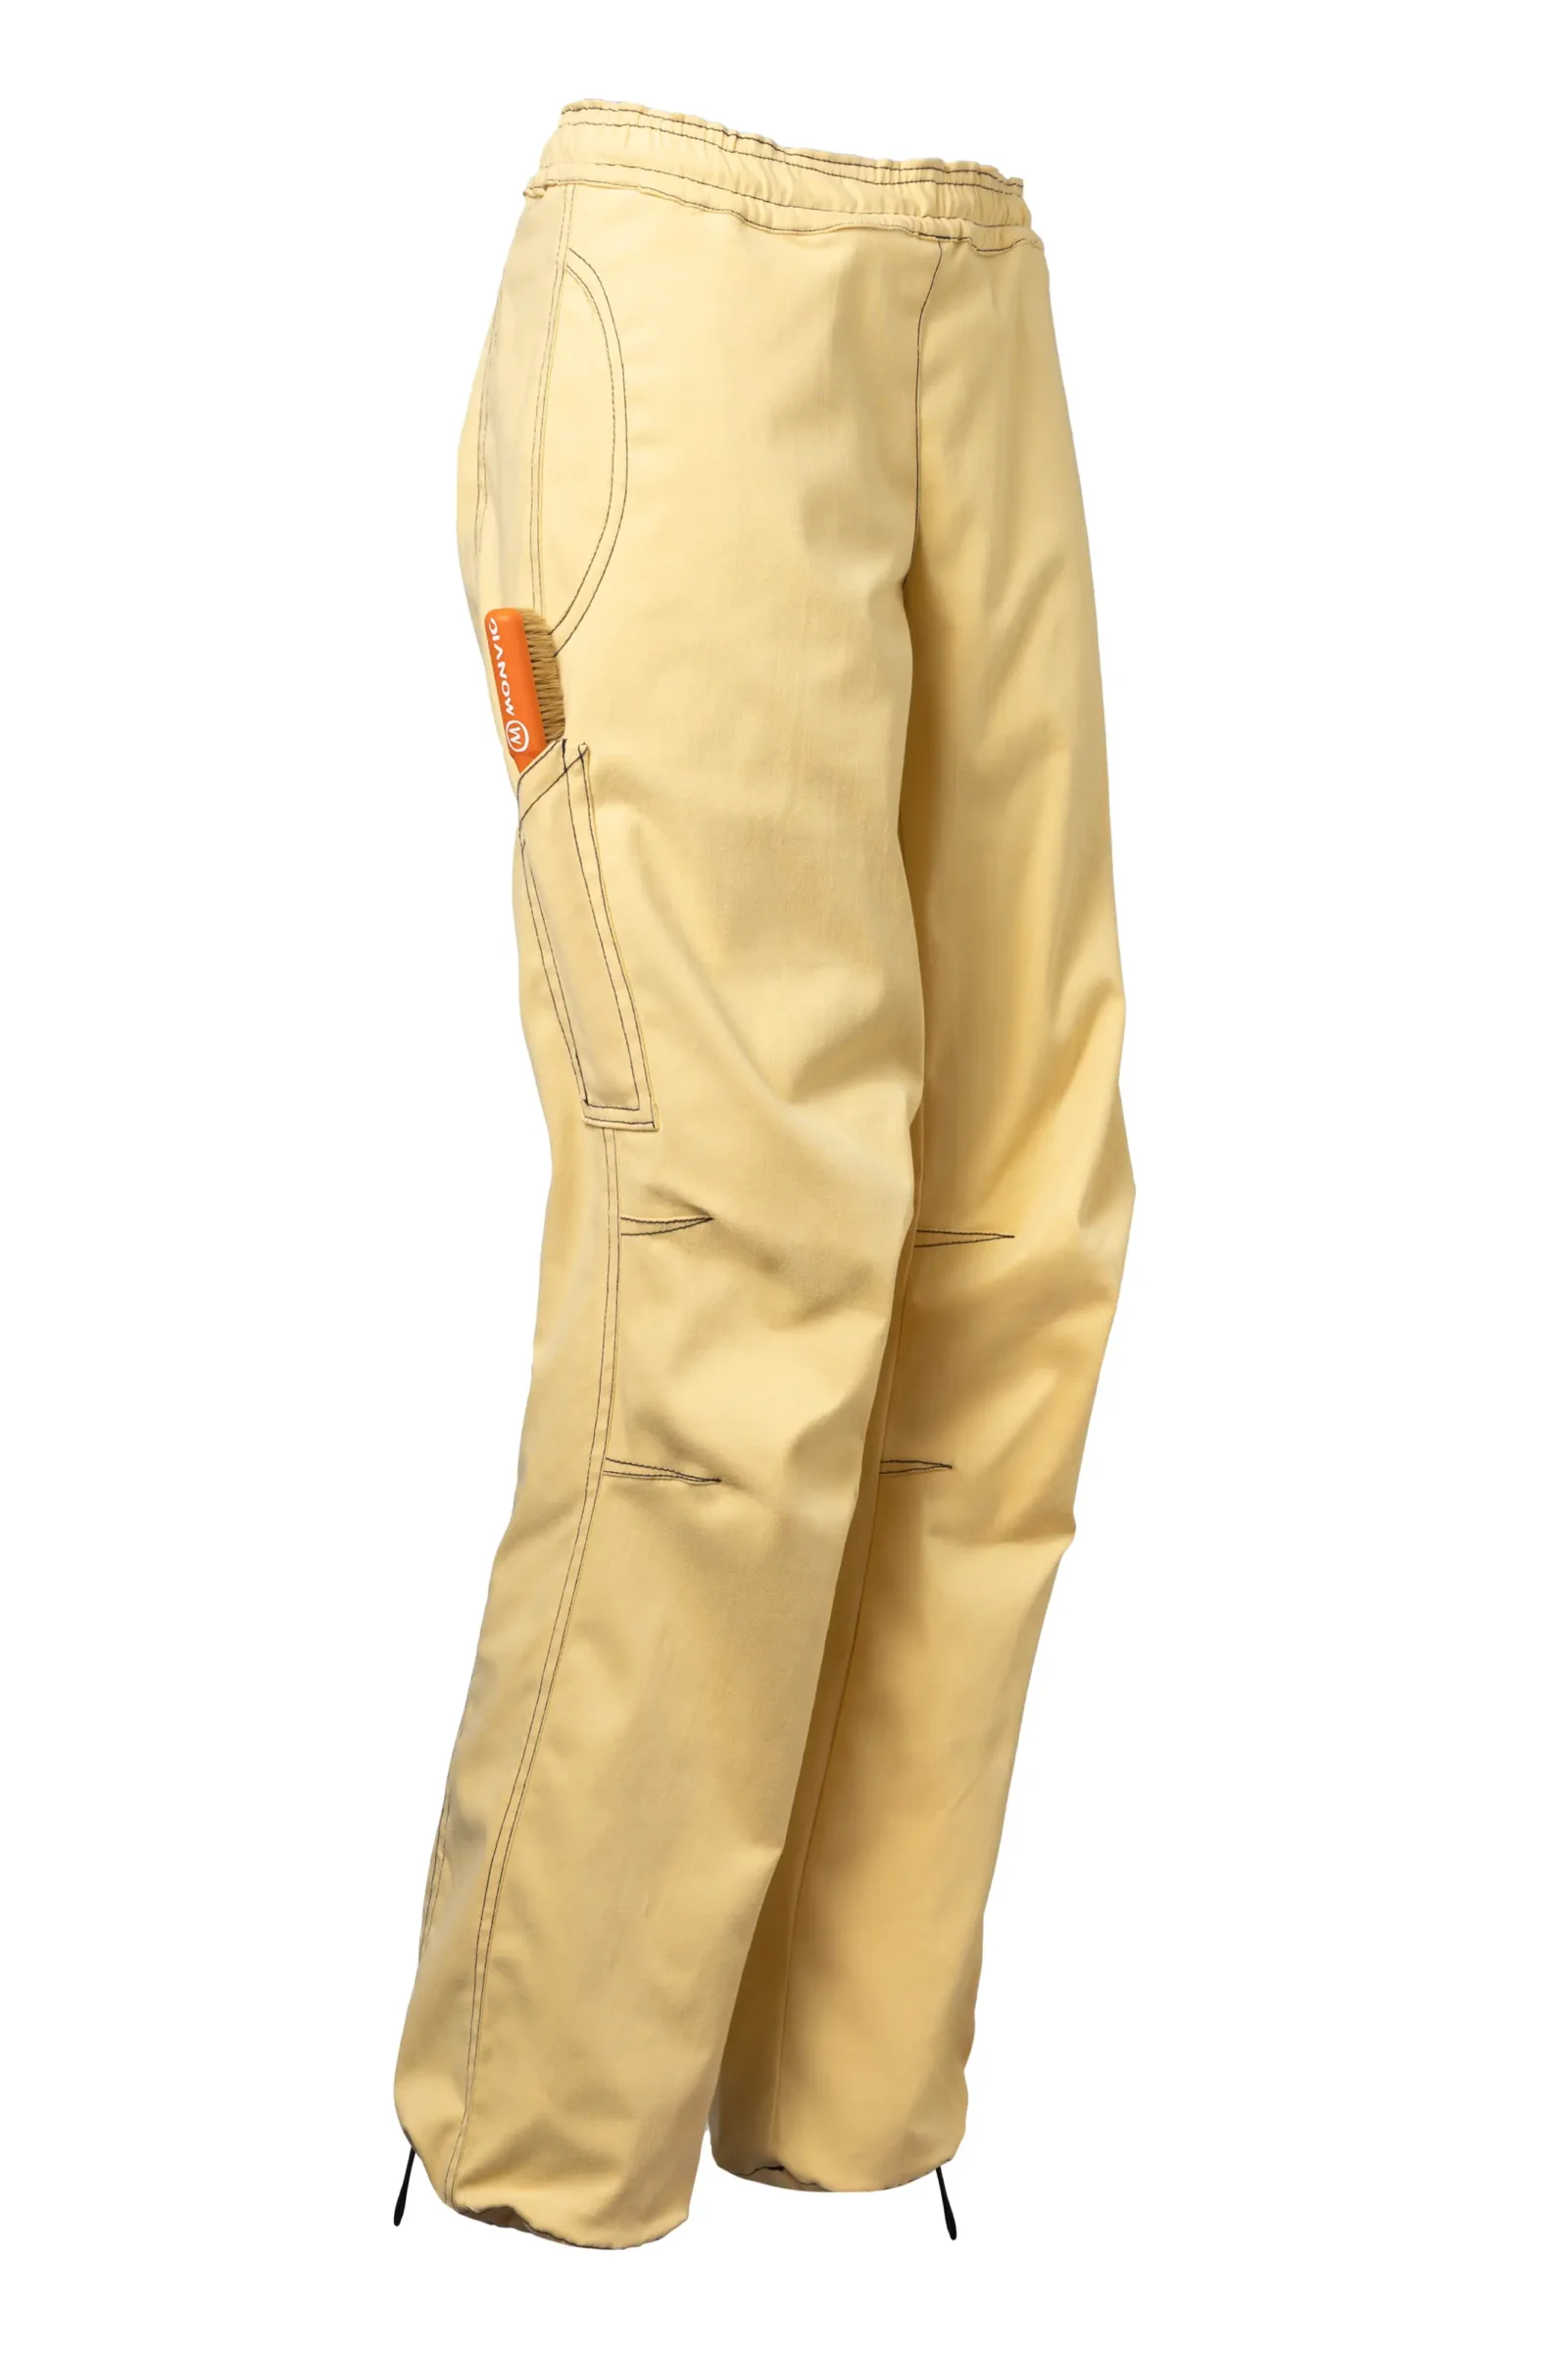 Pantalone donna arrampicata - cotone elasticizzato giallo - VIOLET MONVIC